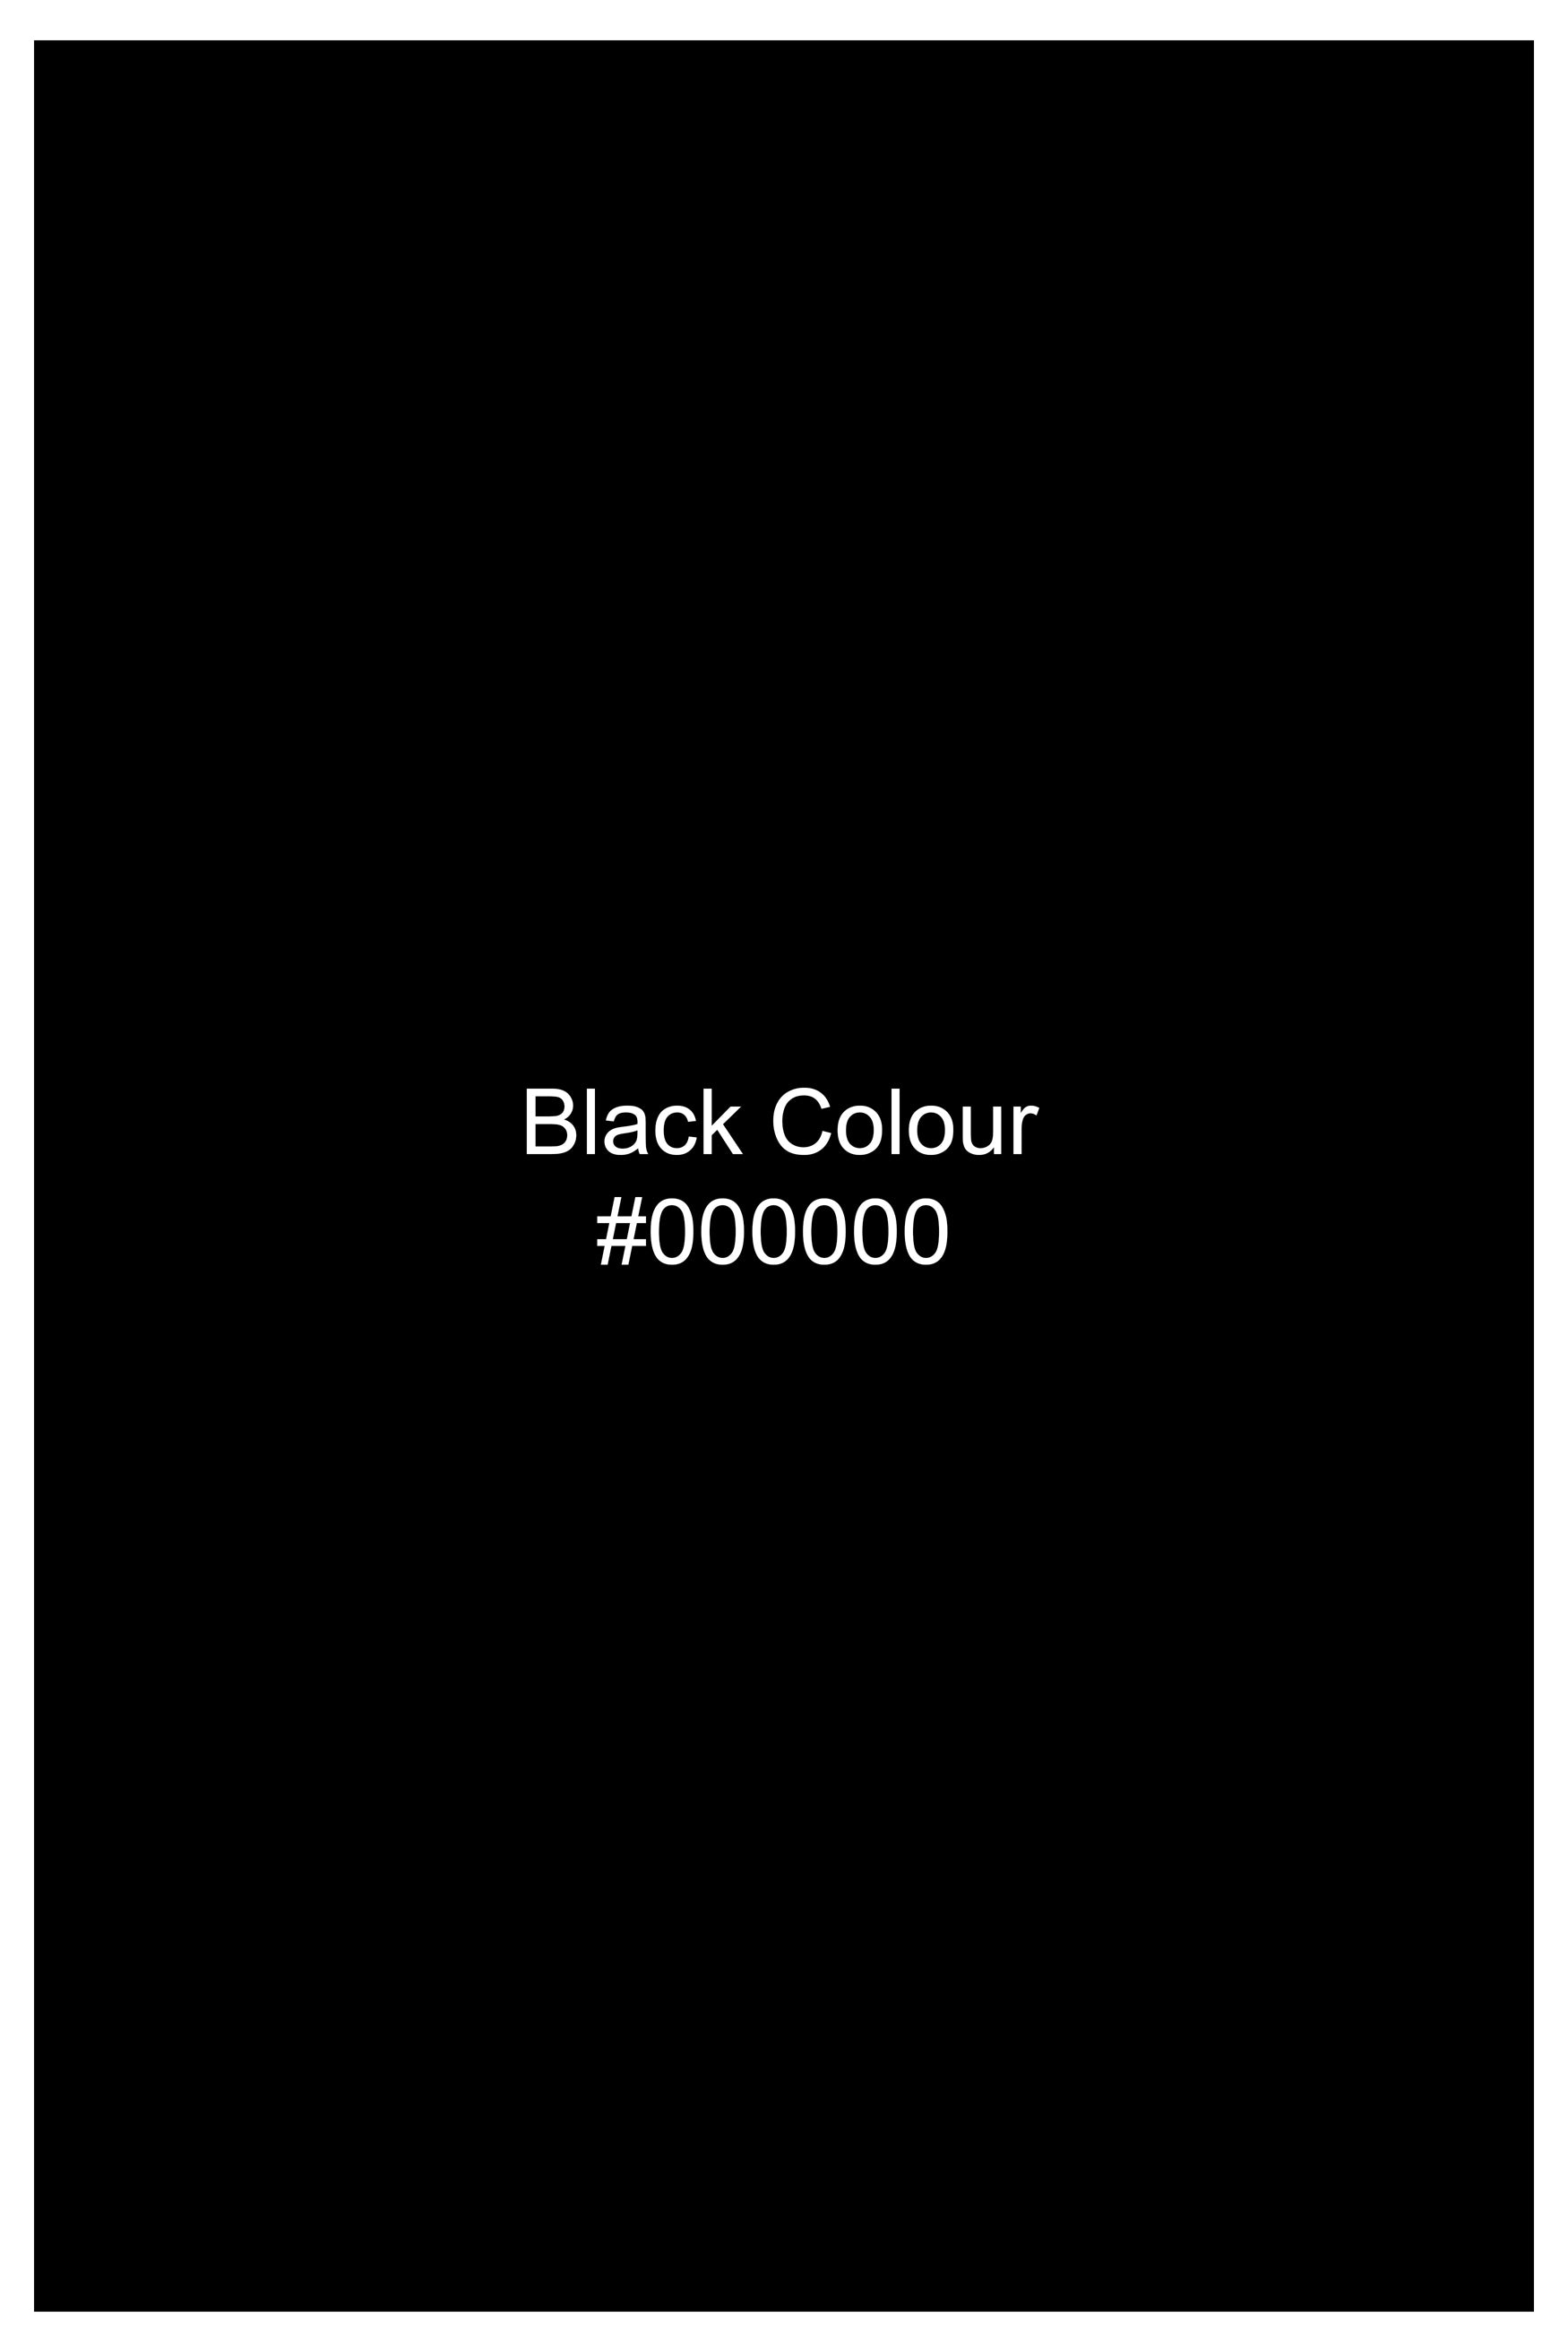 Jade Black Luxurious Linen Half Sleeved Shirt 11994-CC-SS-BLK-38, 11994-CC-SS-BLK-39, 11994-CC-SS-BLK-40, 11994-CC-SS-BLK-42, 11994-CC-SS-BLK-44, 11994-CC-SS-BLK-46, 11994-CC-SS-BLK-48, 11994-CC-SS-BLK-50, 11994-CC-SS-BLK-52 